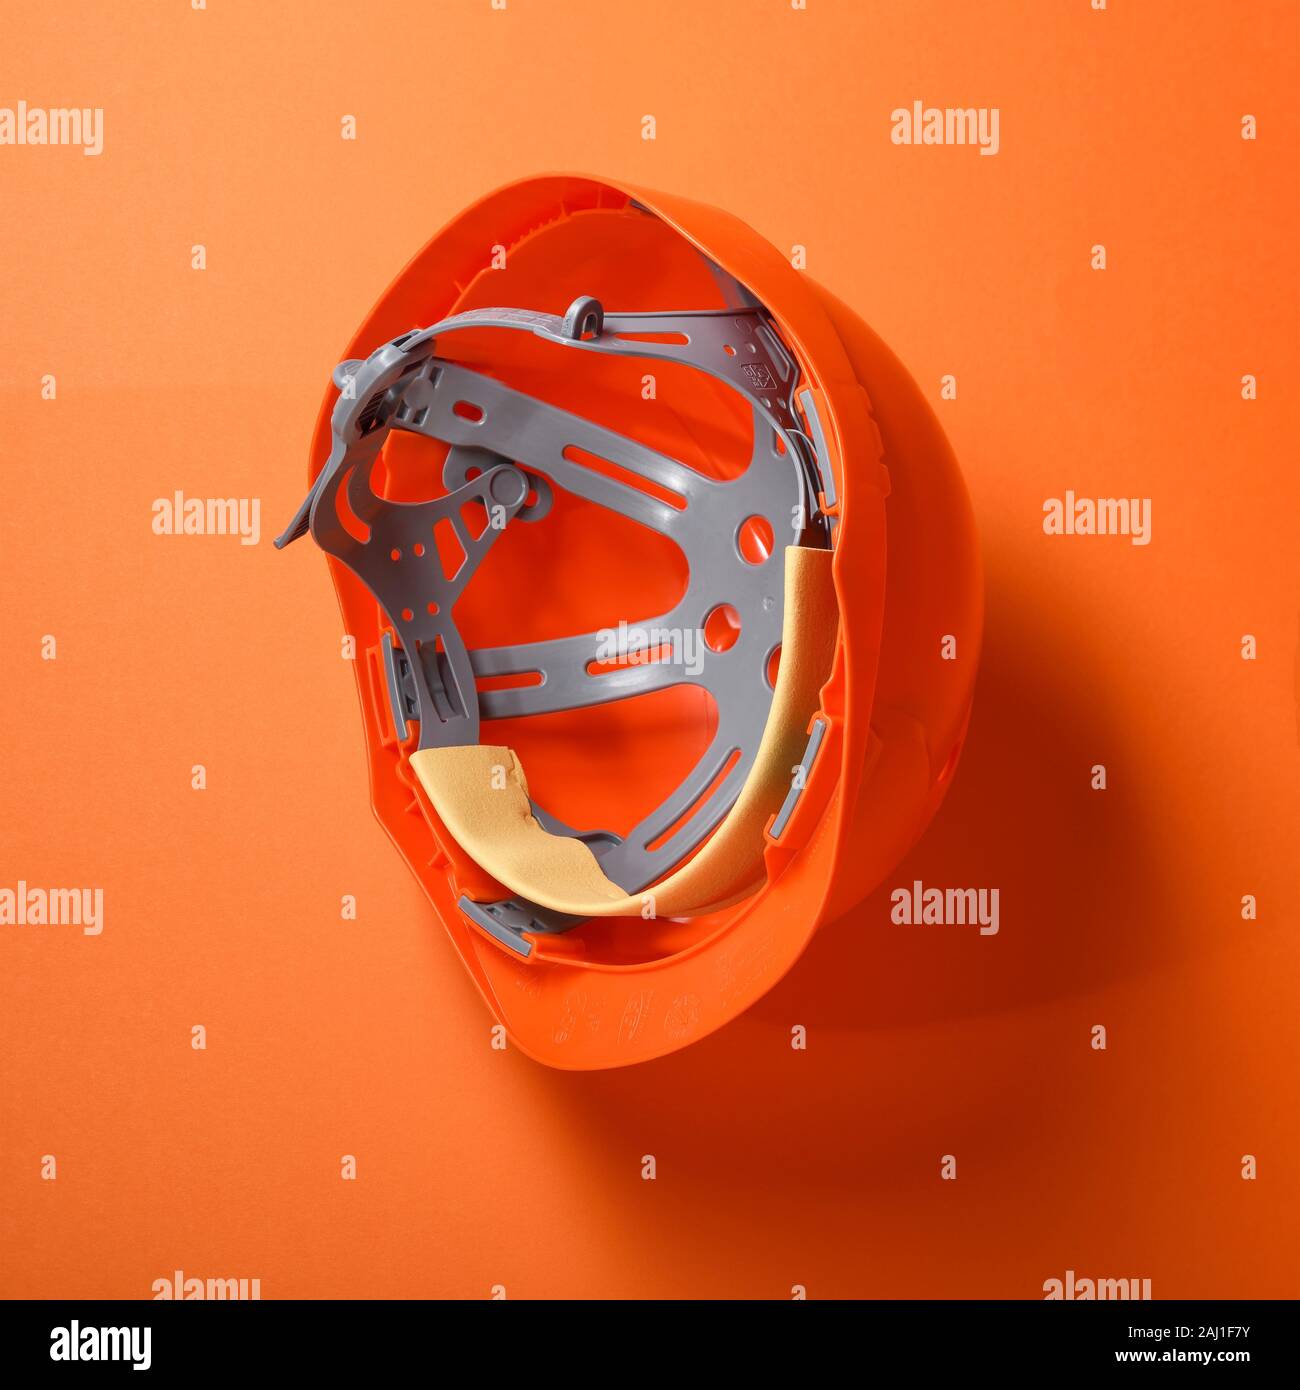 Un casque de sécurité casque de sécurité orange sur fond orange Banque D'Images